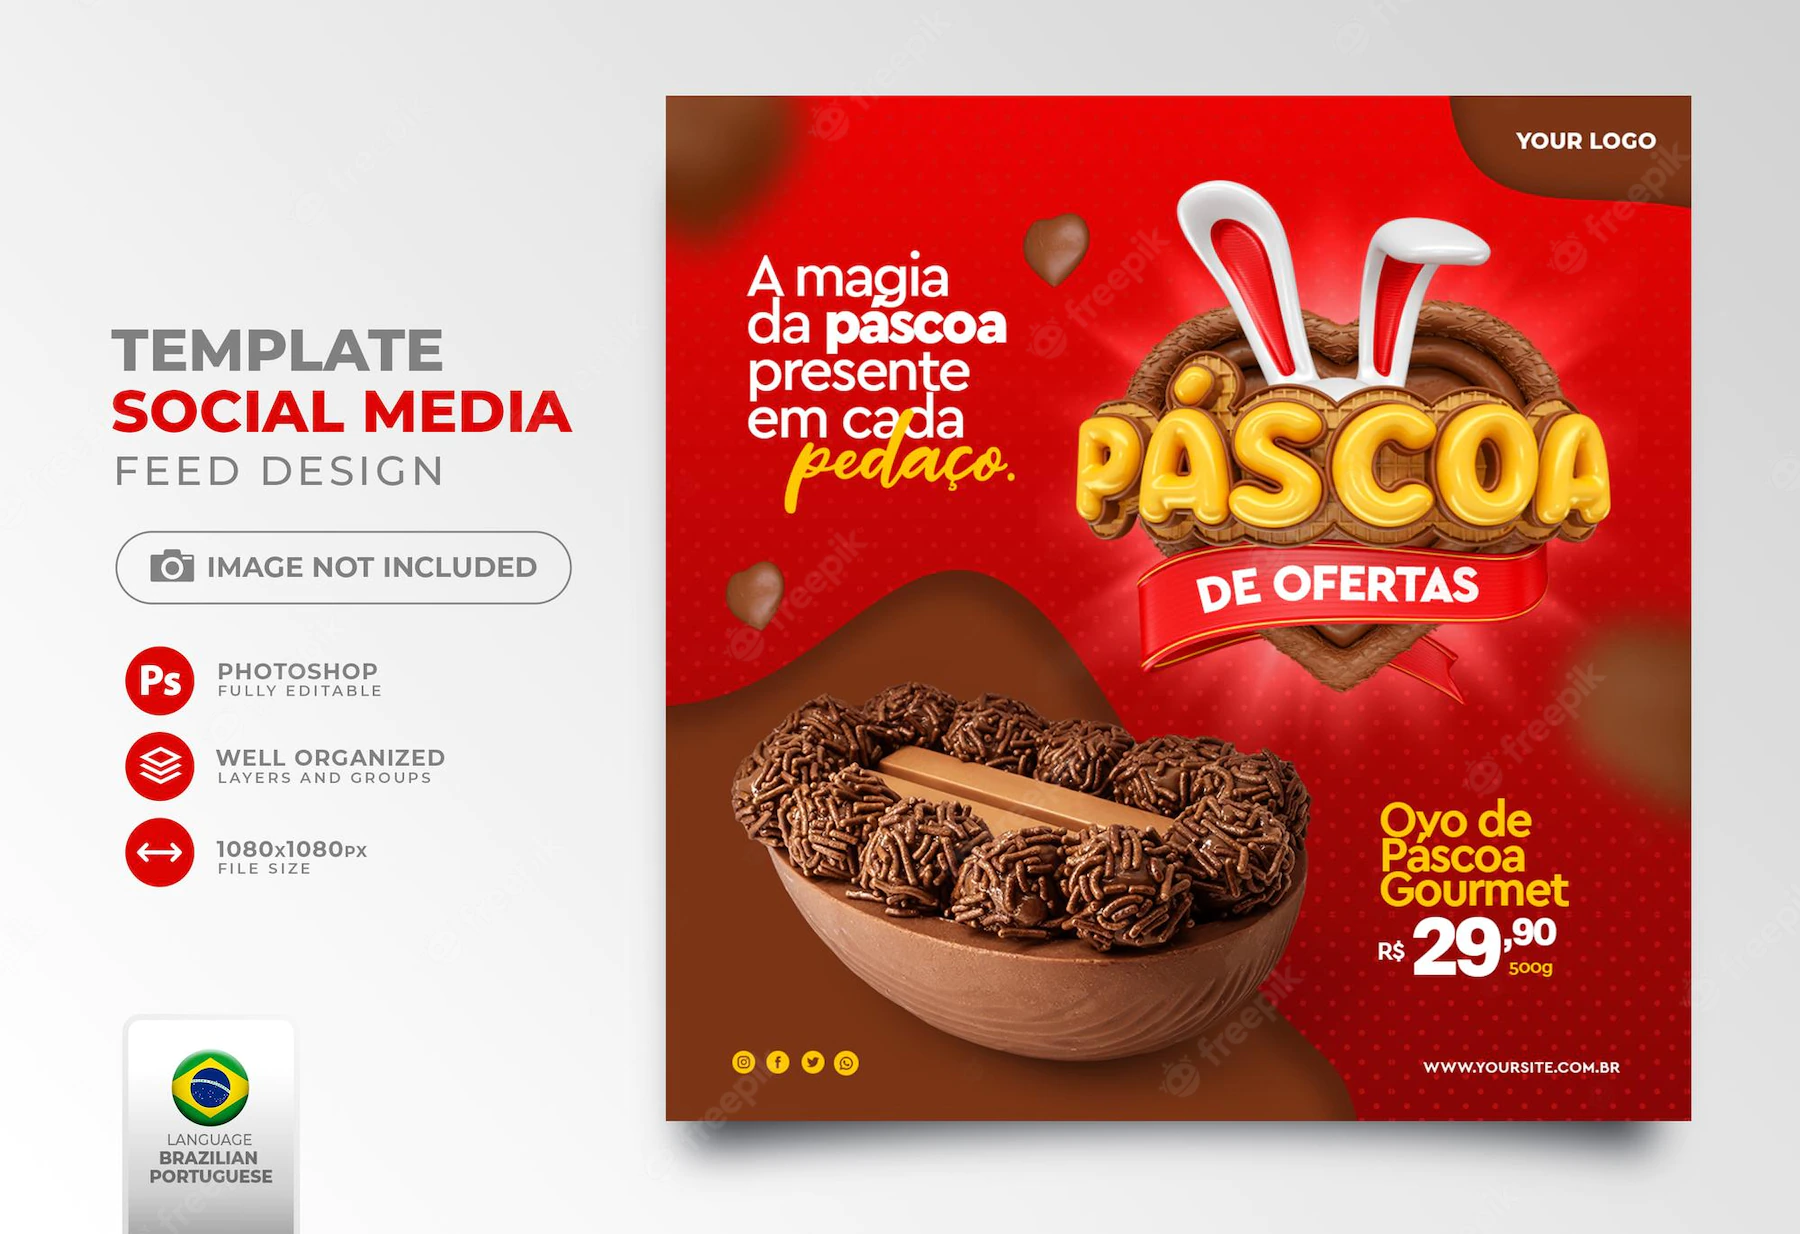 Post Social Media Easter Deals Brazil 3d Render Realistic Discounts Promotions 363450 2378